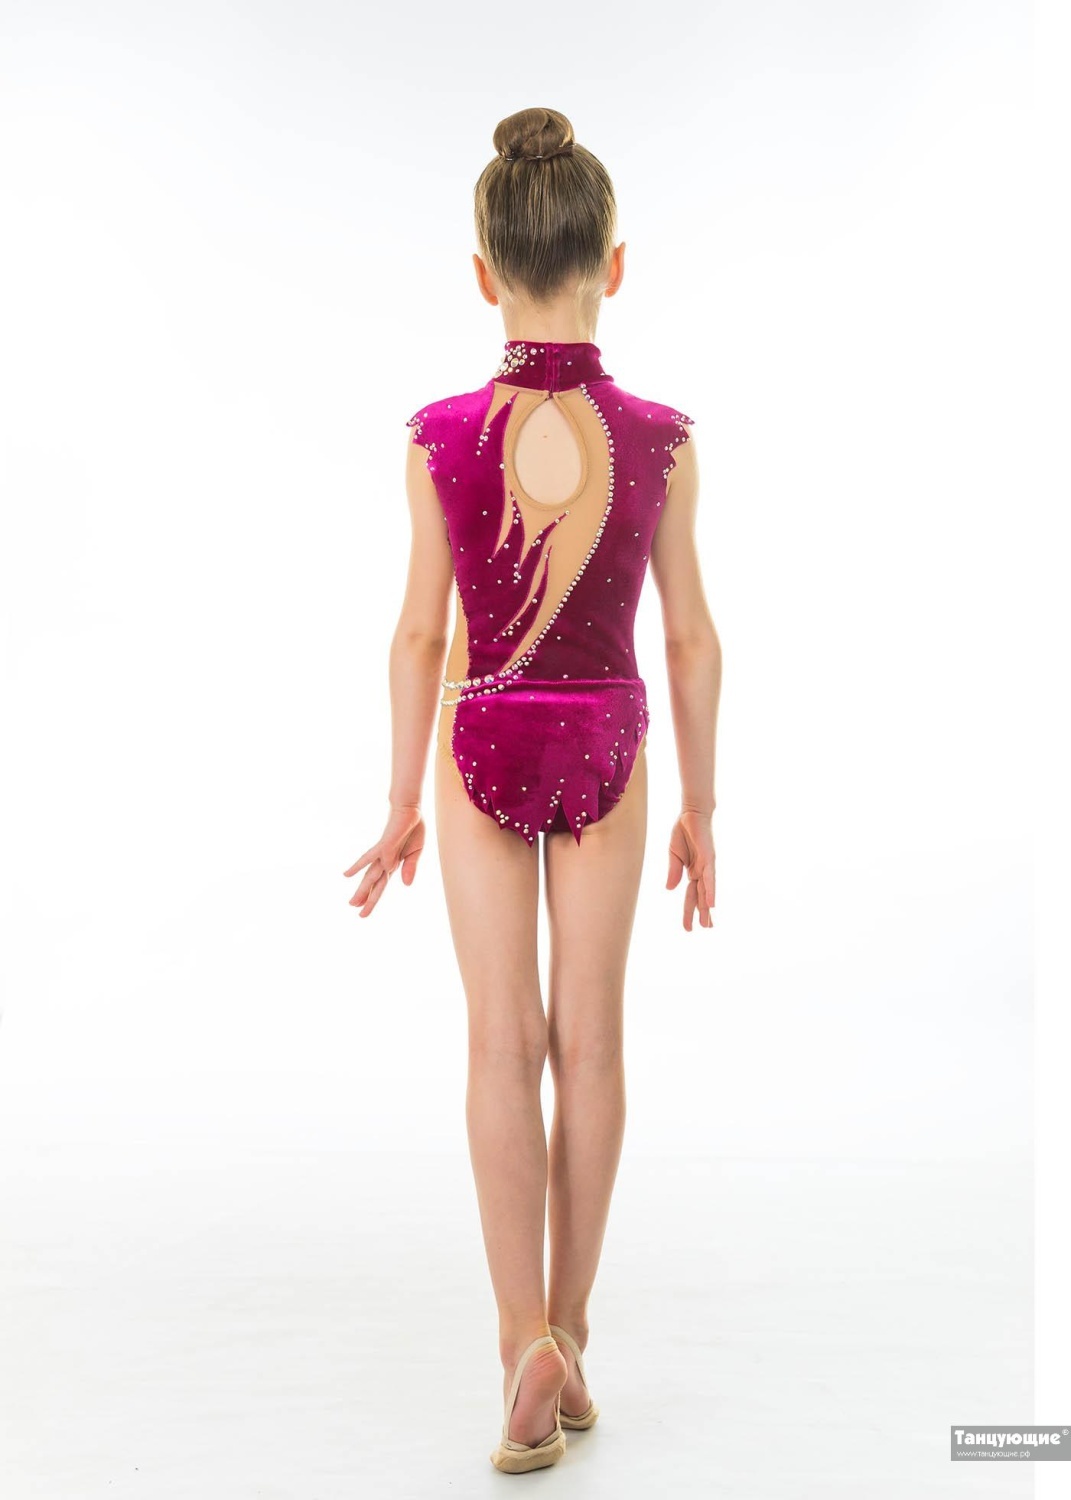 Купальник для художественной гимнастики Бархатный цветок — купить в интернет-магазине «Танцующие»